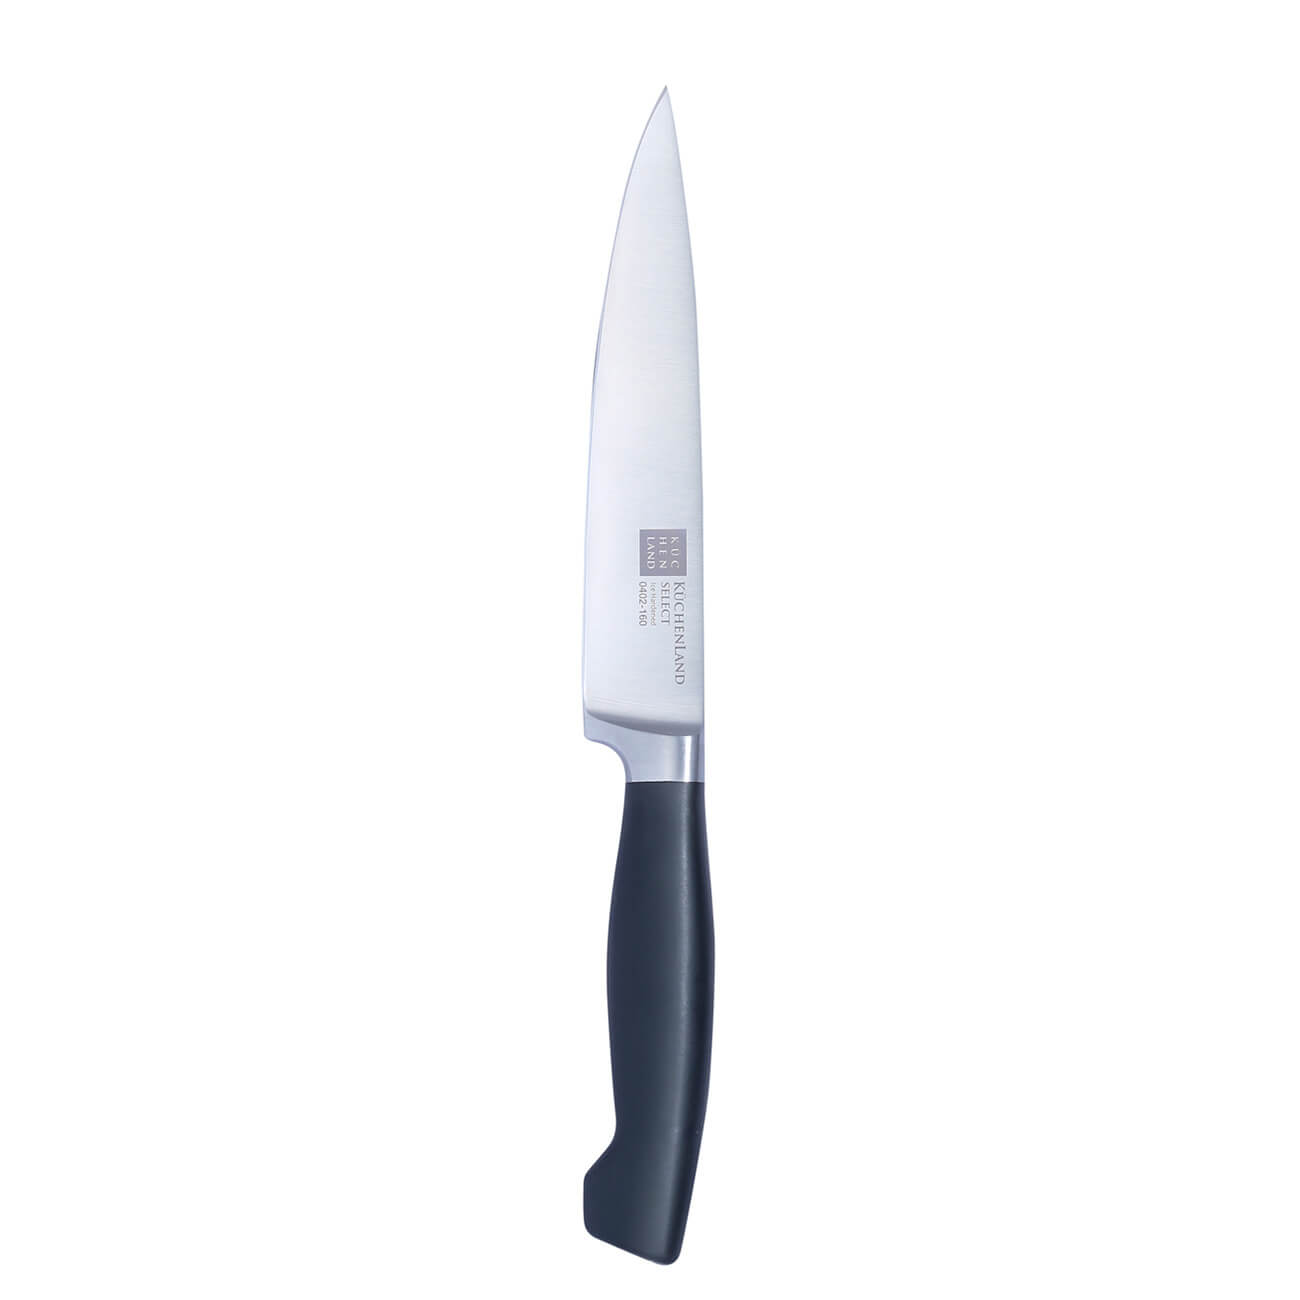 Kuchenland Нож для нарезки, 16 см, сталь/пластик, Select инструменты для моделирования и придания формы набор 3 шт металл пластик 16 см 17х7 5 см